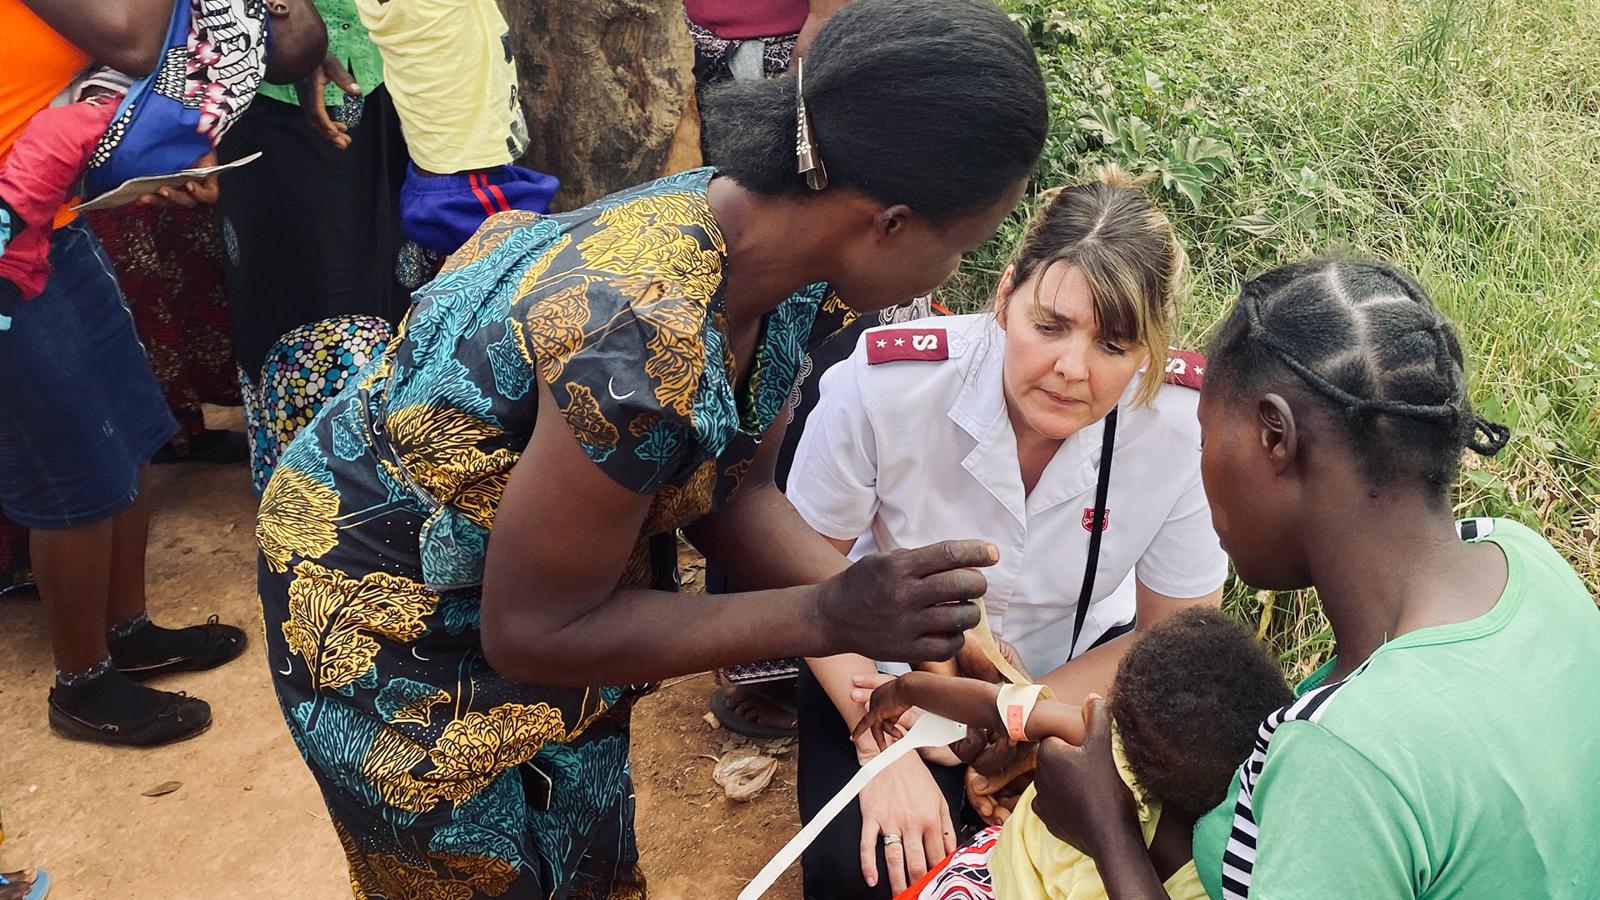 En kvinna med Frälsningsarméns uniform samtalar med några kvinnor och ett barn utom hus i Zambia. I bakgrunden syns fler personer